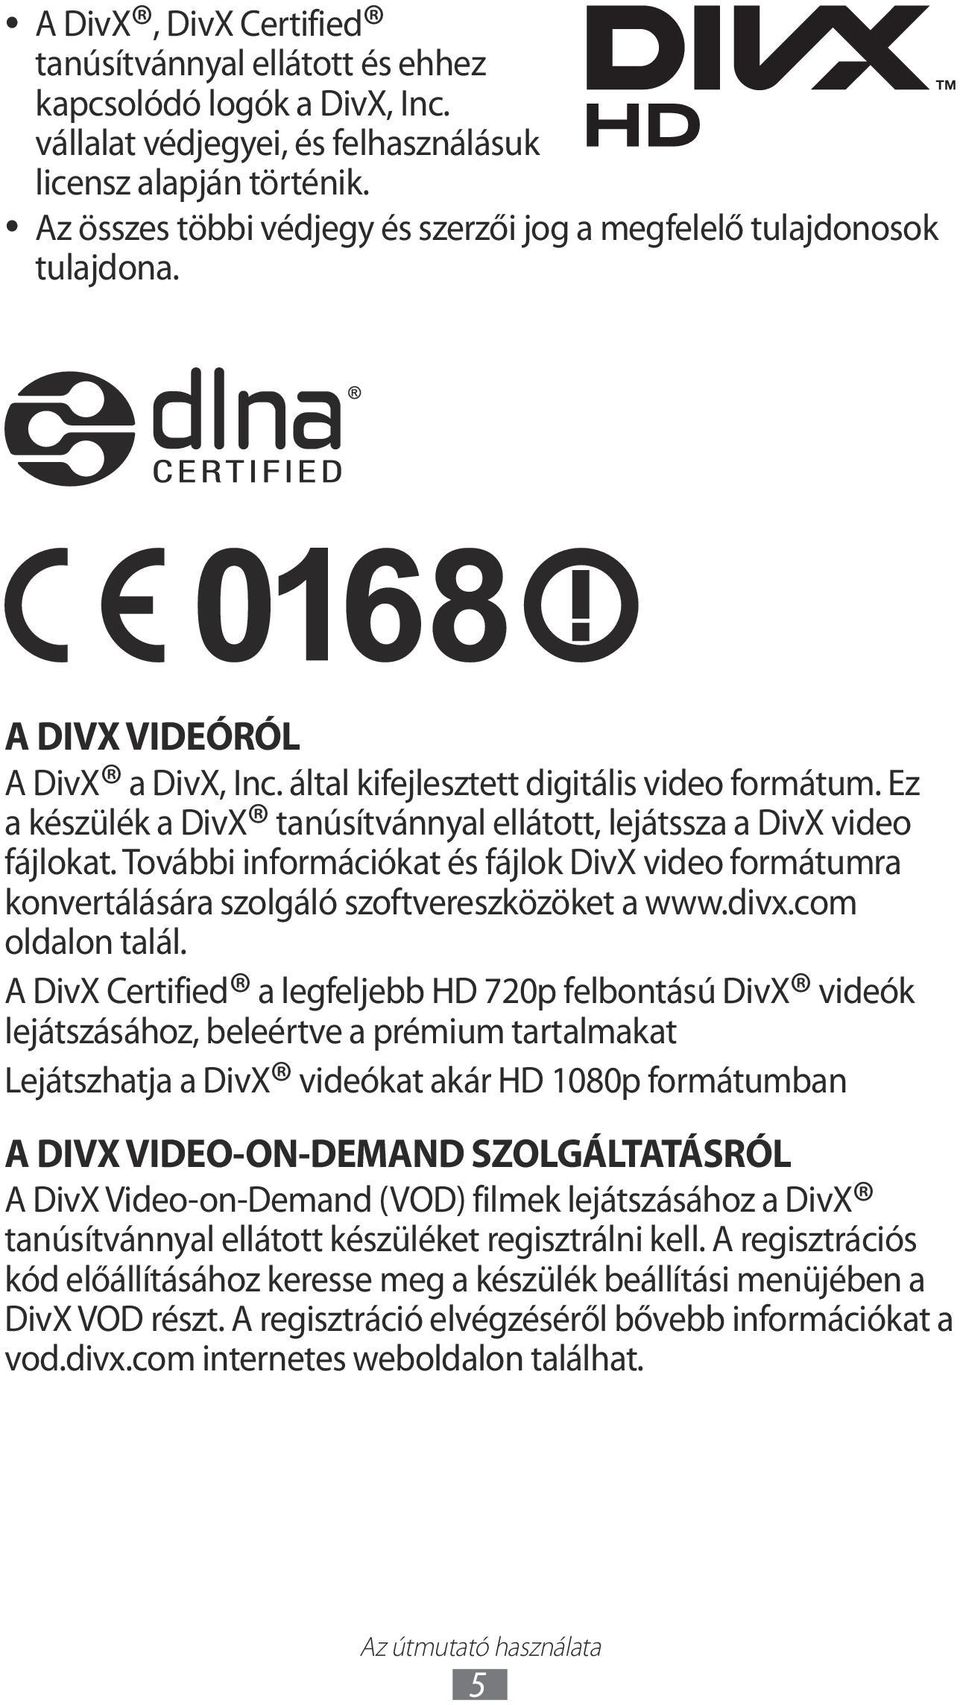 Ez a készülék a DivX tanúsítvánnyal ellátott, lejátssza a DivX video fájlokat. További információkat és fájlok DivX video formátumra konvertálására szolgáló szoftvereszközöket a www.divx.